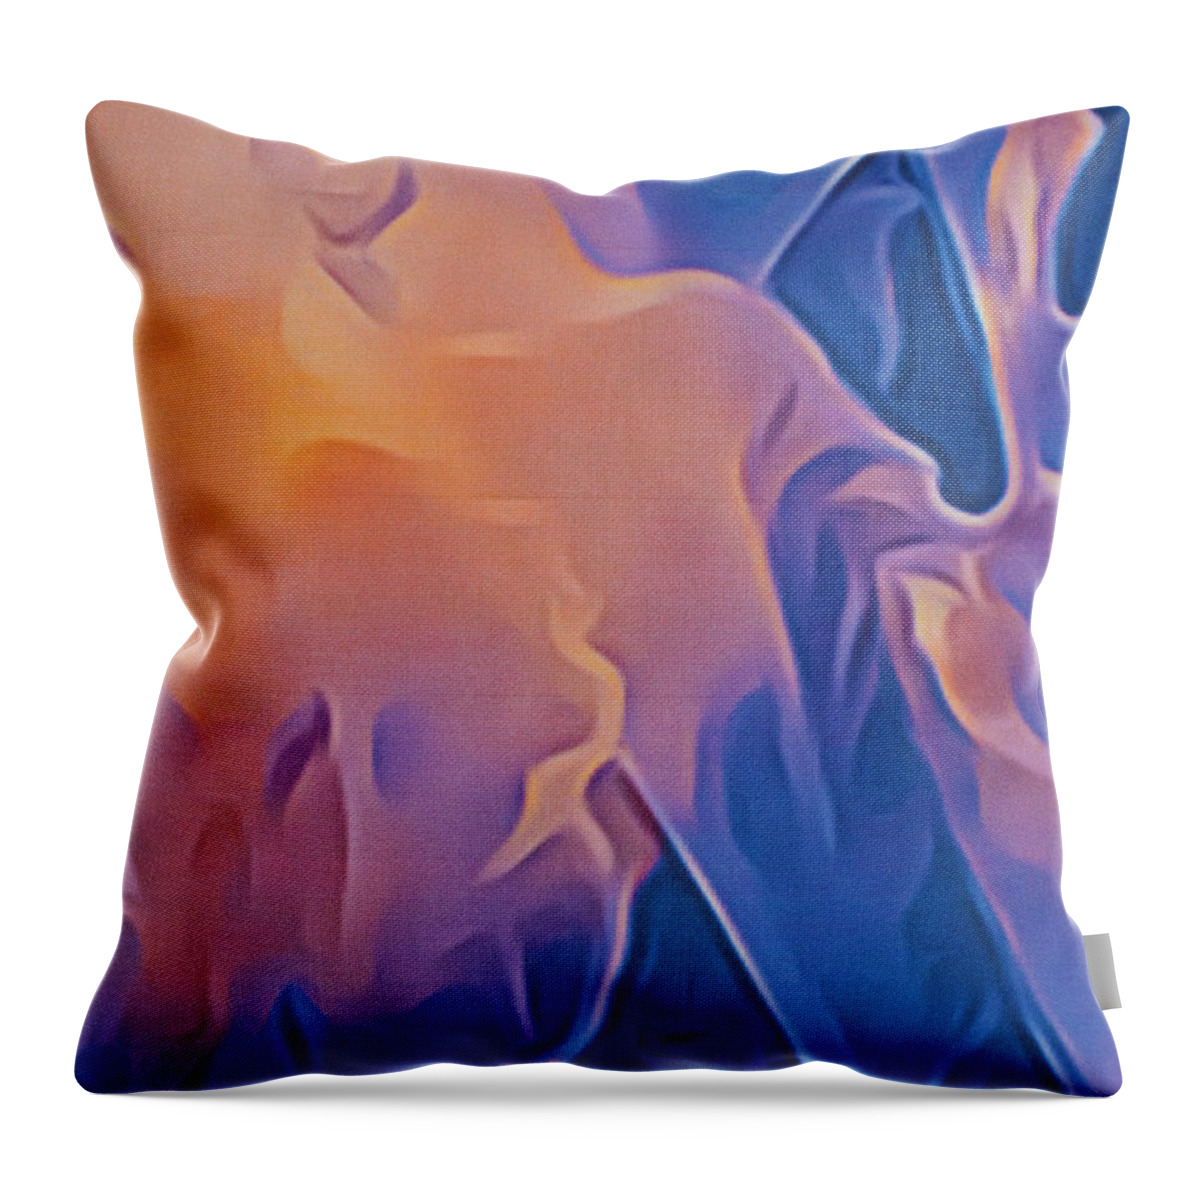 J Macnair Art Throw Pillow featuring the digital art Jelly Magic by Jackie MacNair